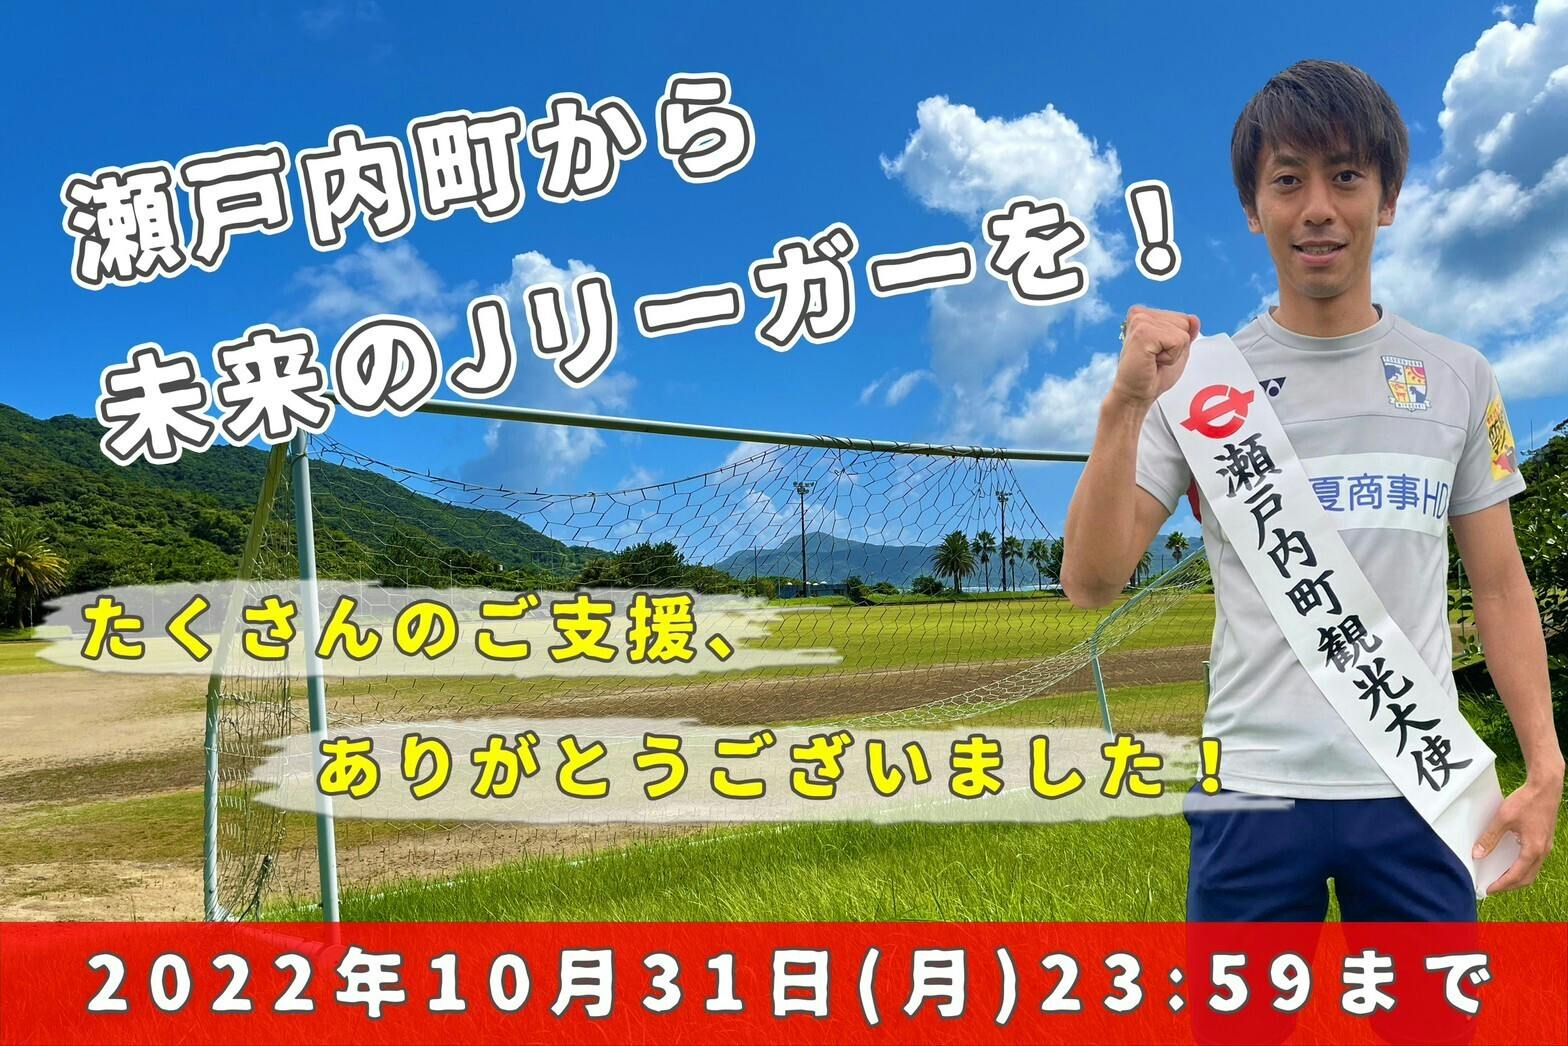 瀬戸内町の子どもたちのために、薗田卓馬がサッカー大会【瀬戸内カップ